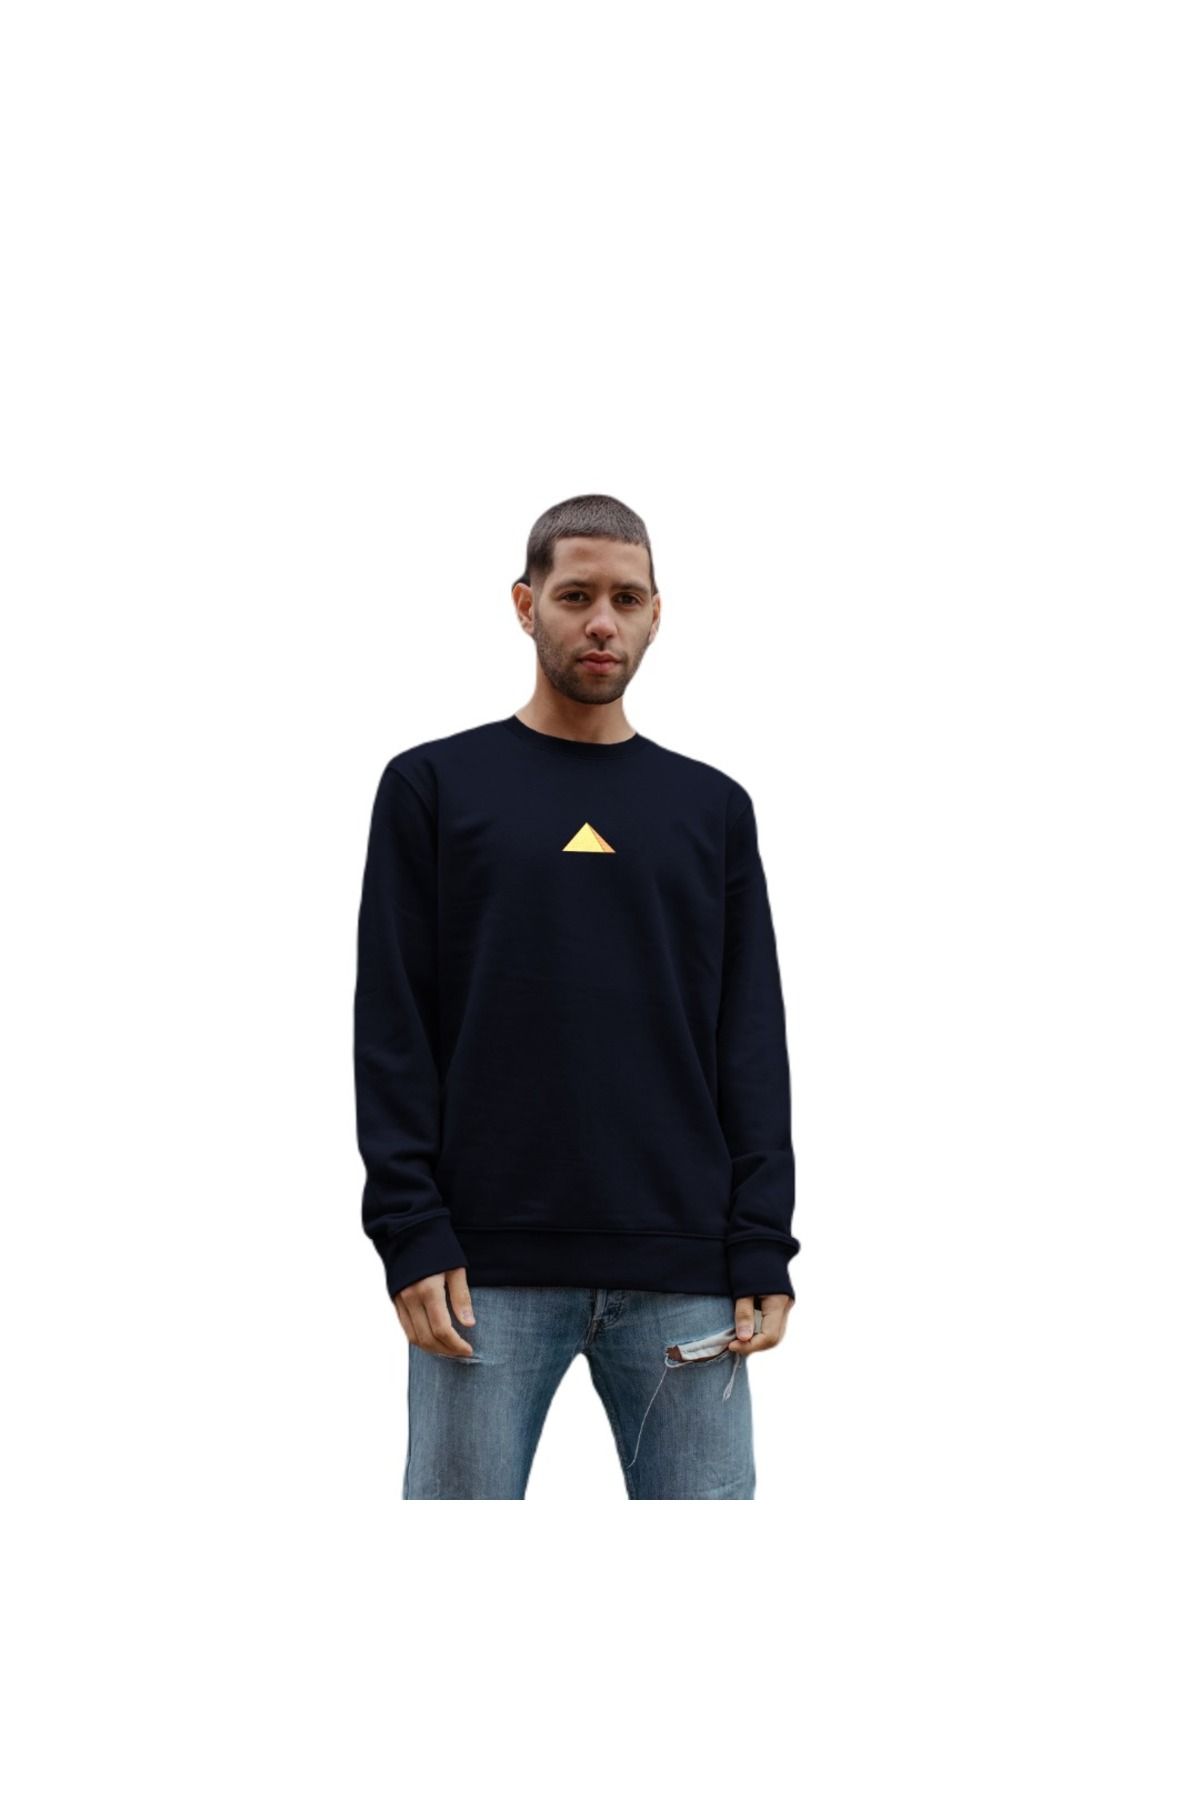 Sekiz Numara Mısır Piramit Soft Premium Sweatshirt